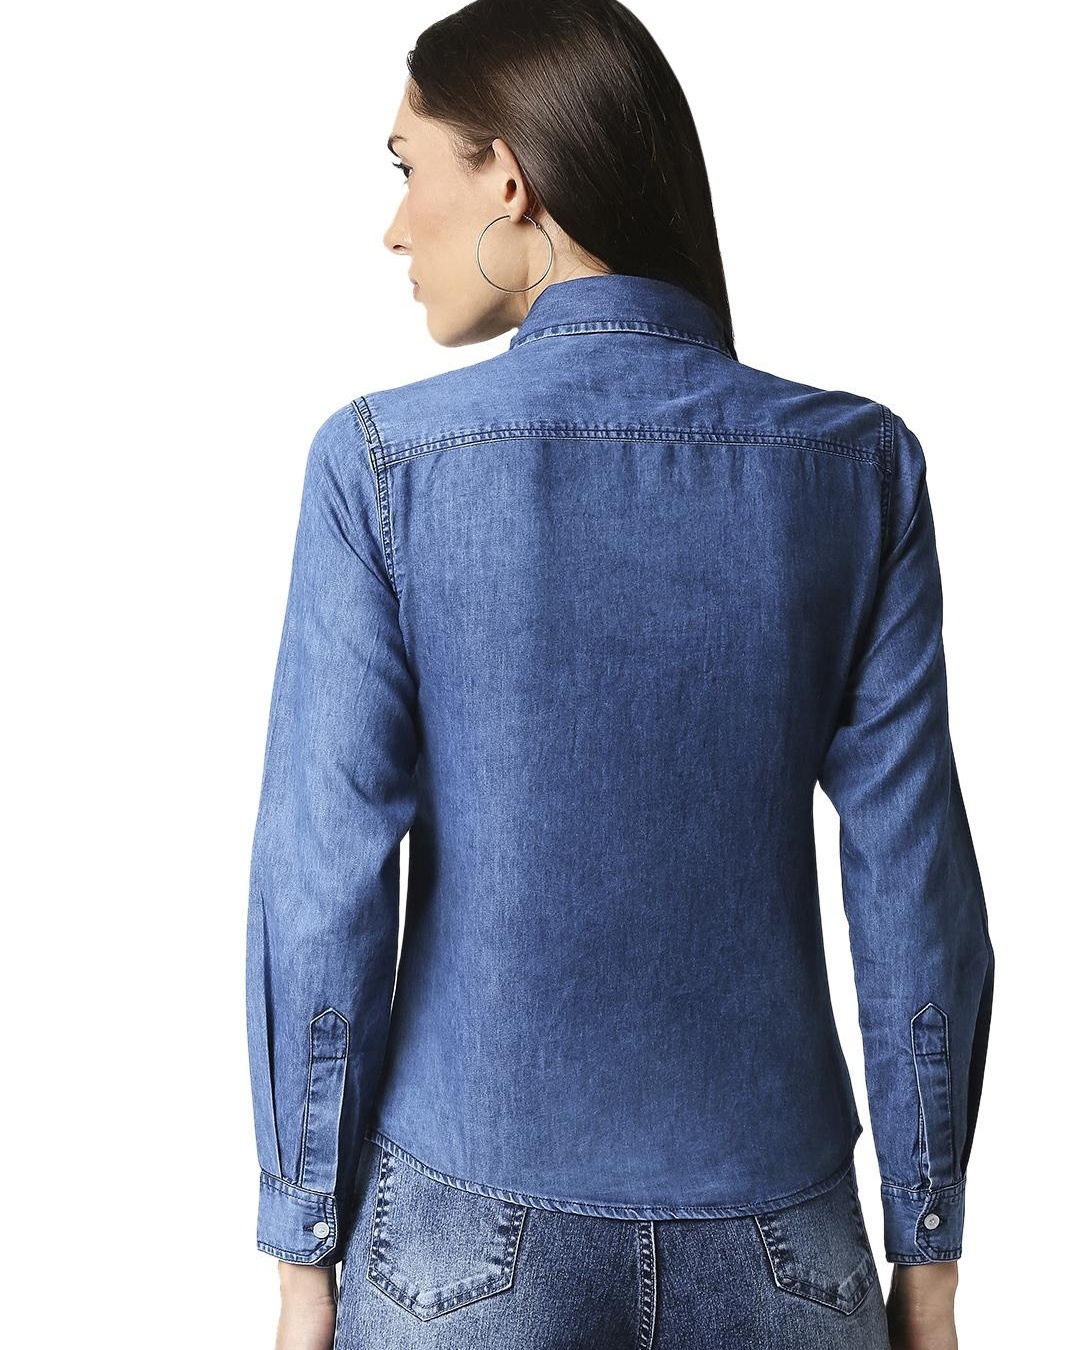 Buy Women's Blue Denim Shirt for Women Blue Online at Bewakoof